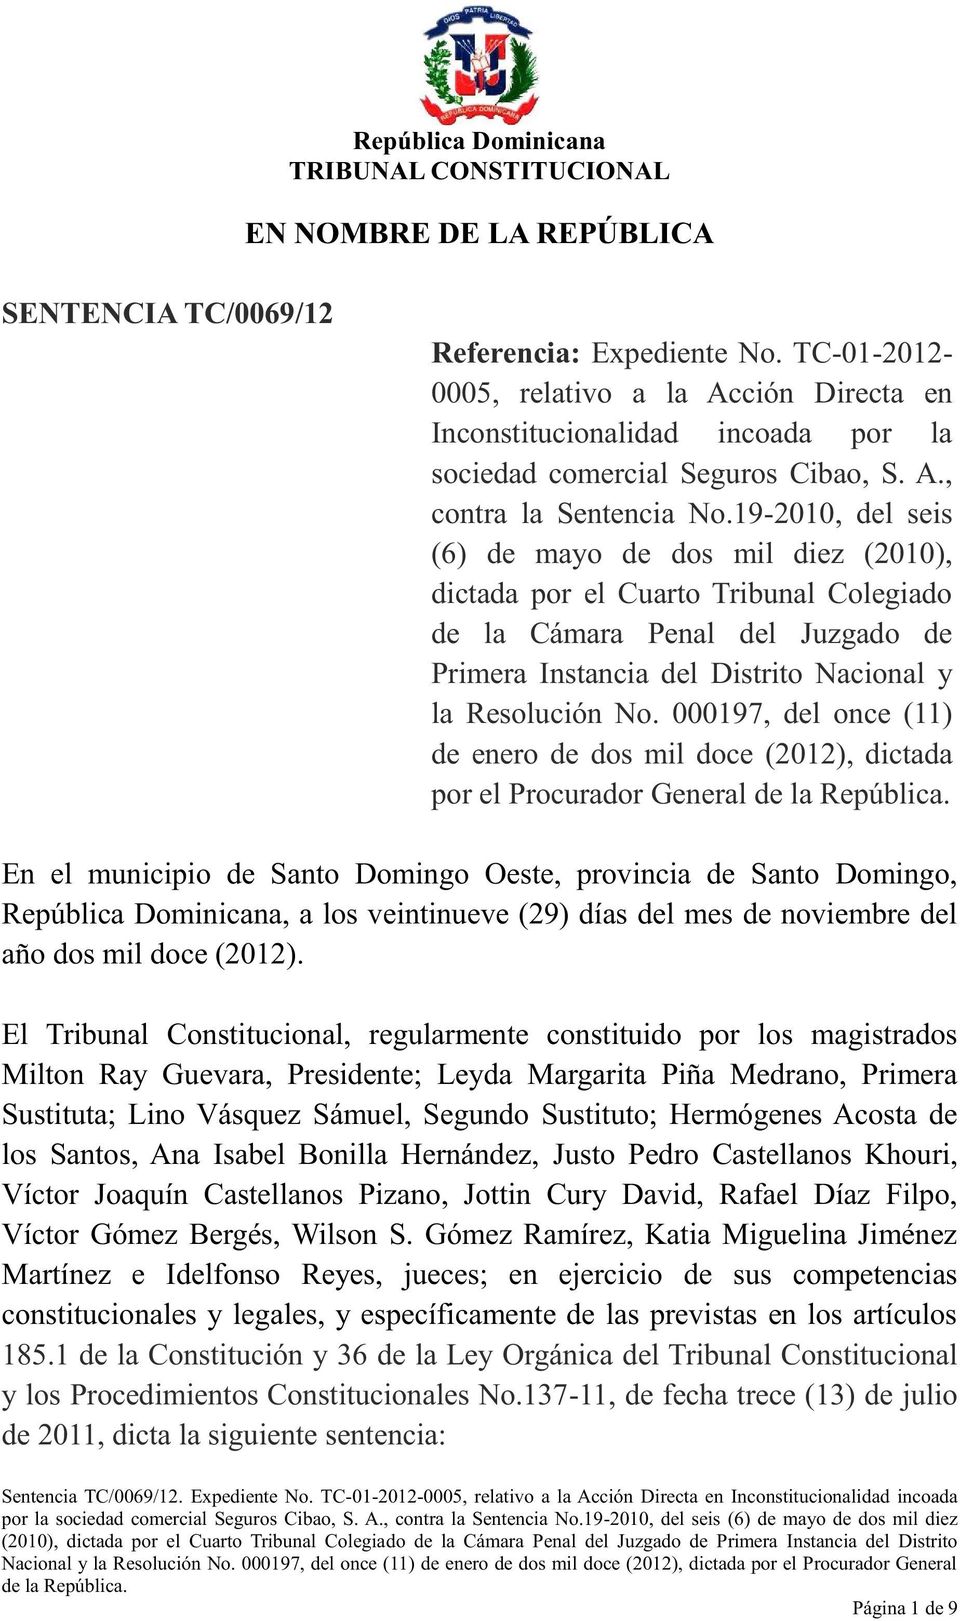 000197, del once (11) de enero de dos mil doce (2012), dictada por el Procurador General En el municipio de Santo Domingo Oeste, provincia de Santo Domingo, República Dominicana, a los veintinueve